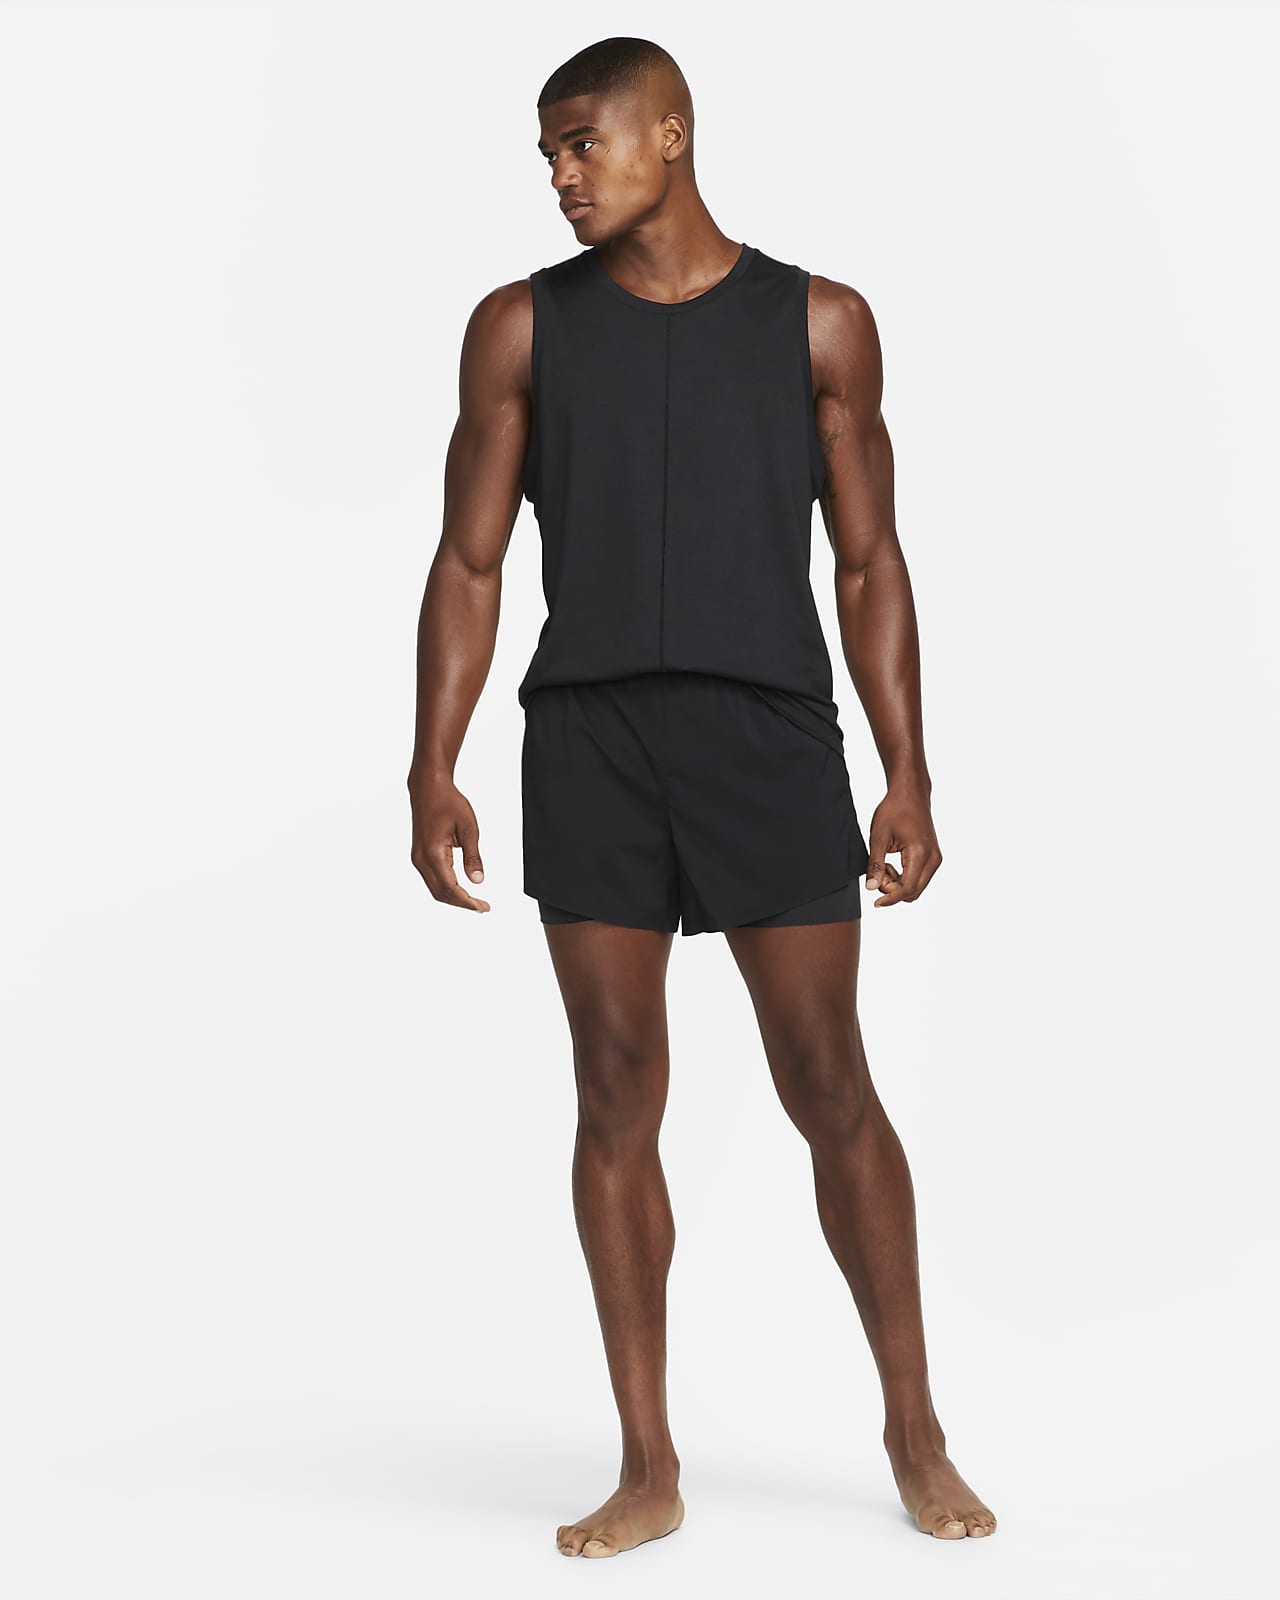 Nike Yoga Men's Hot Yoga Shorts. Nike BE